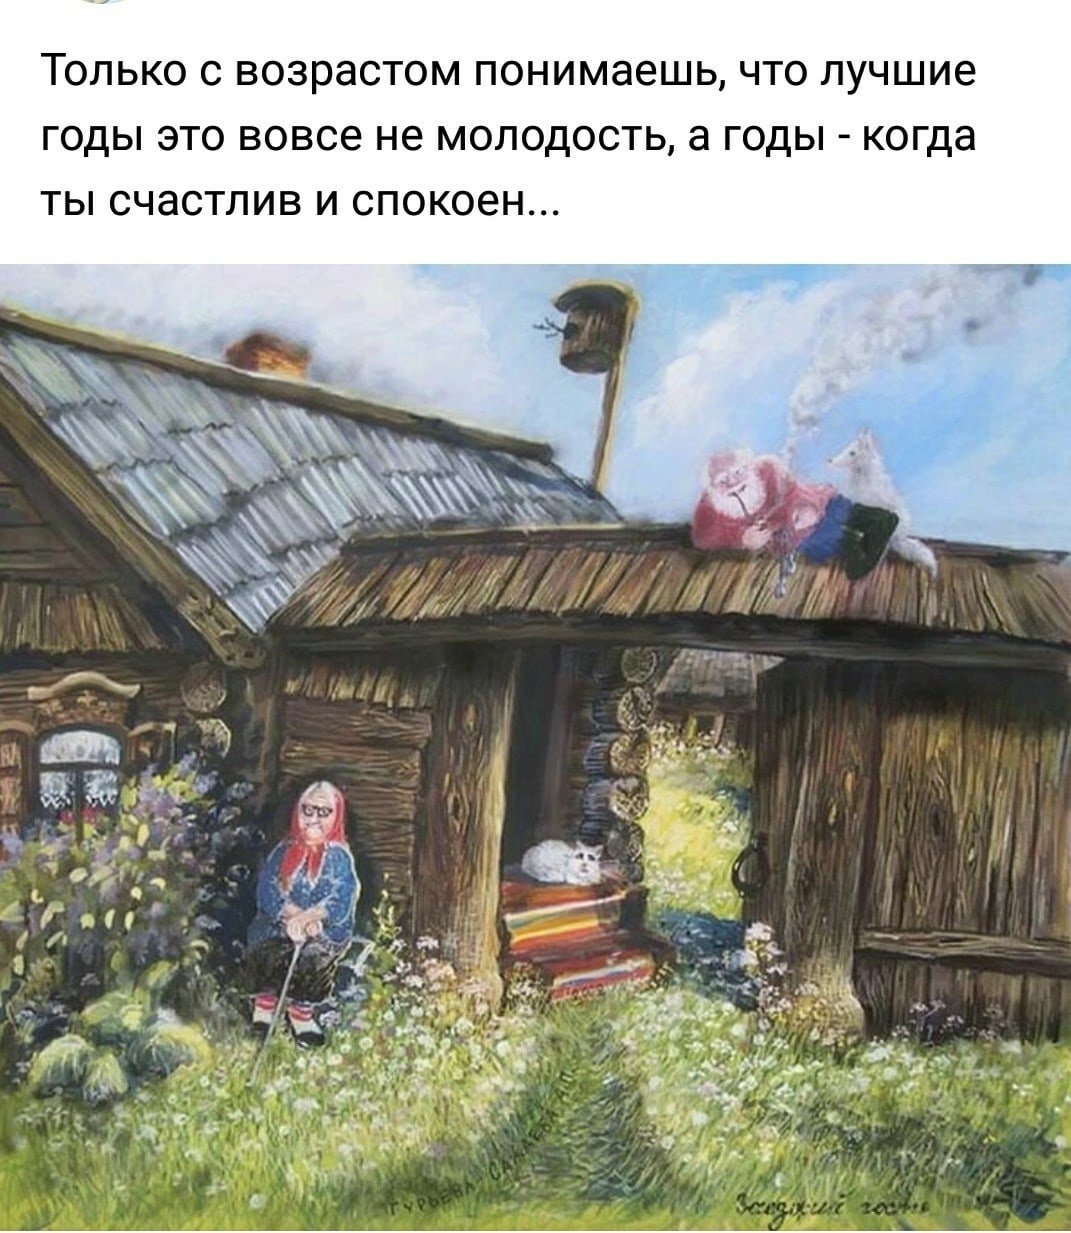 Женская хата. Художник а. Гурьева-Сажаева.